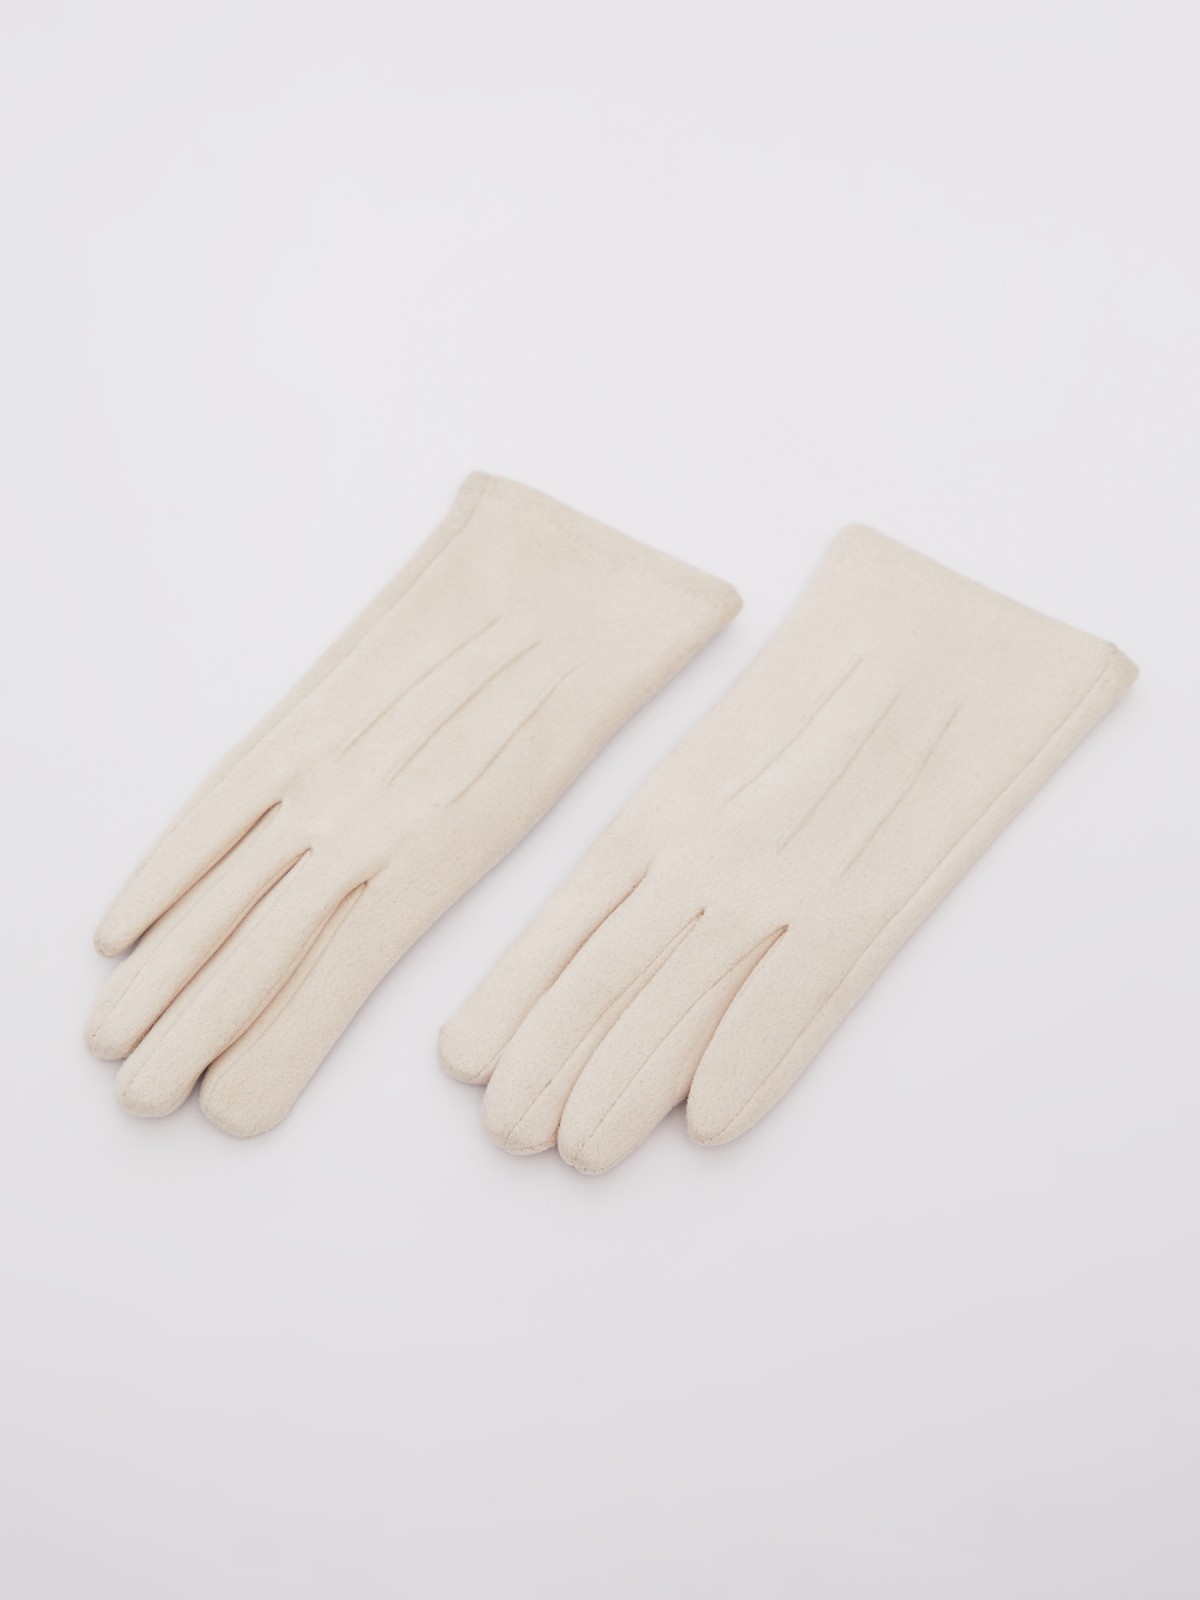 Утеплённые текстильные перчатки с функцией Touch Screen